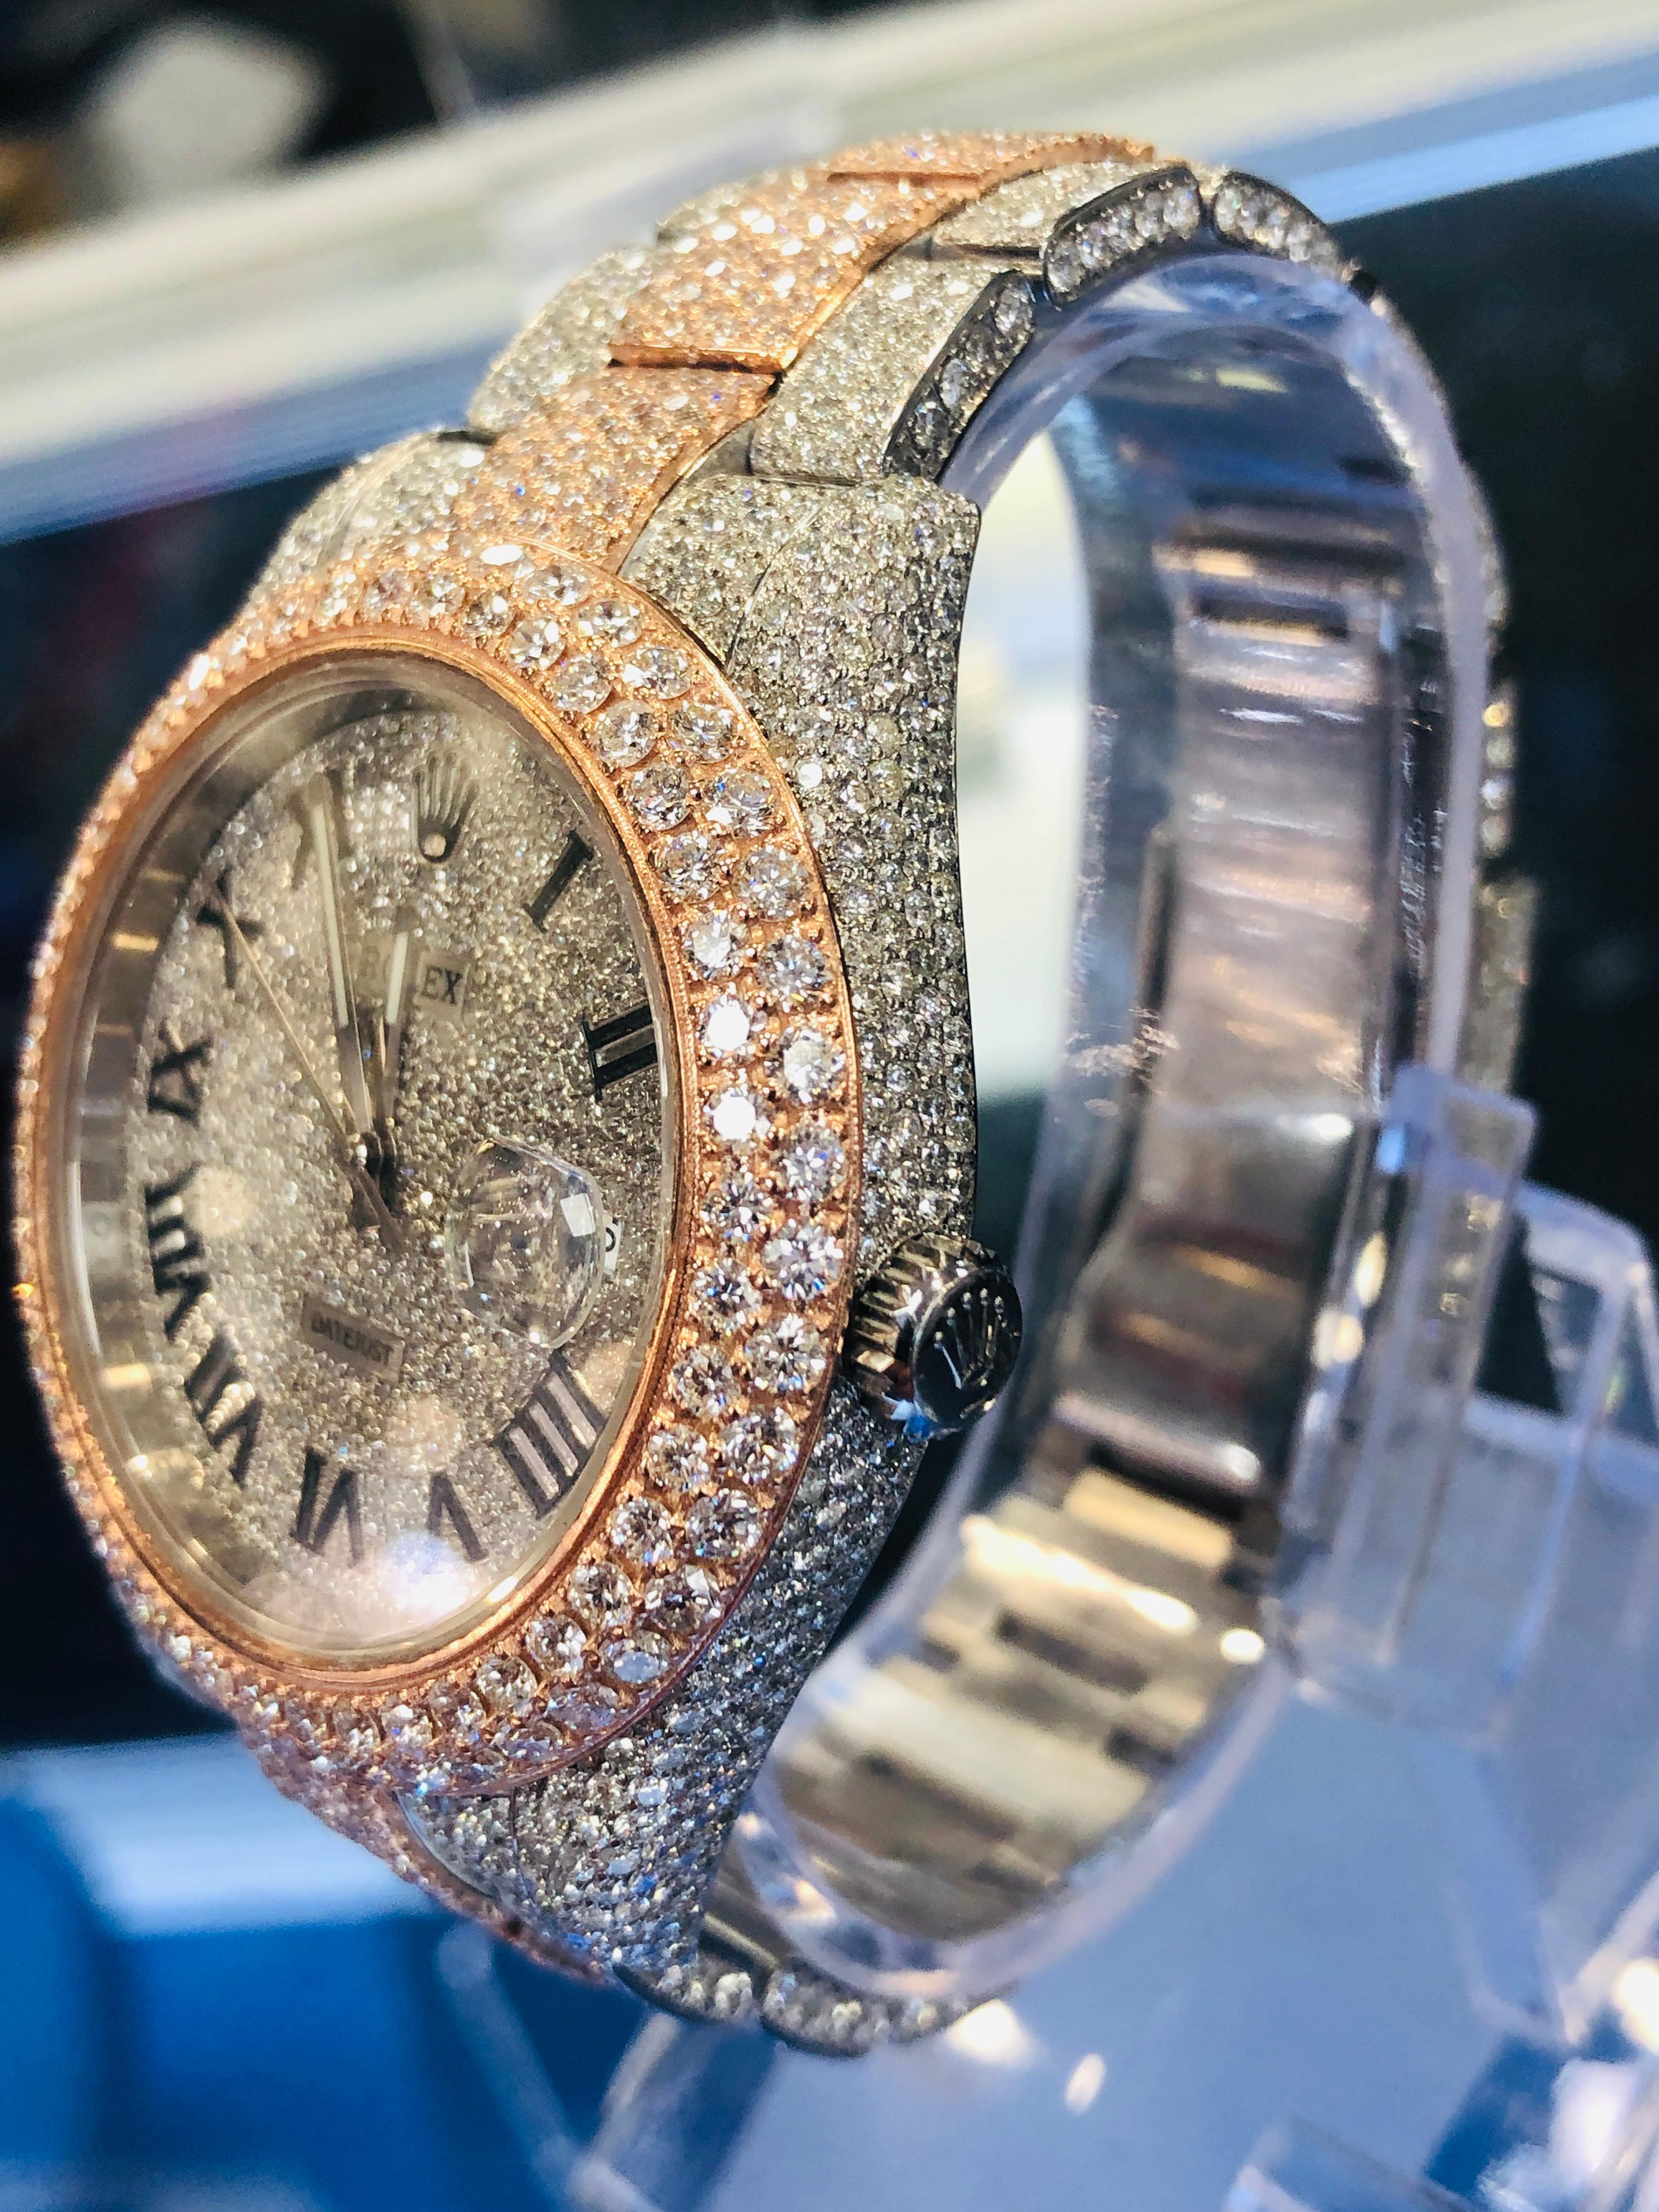 Rolex Datejust 41mm deux tons or rose et acier inoxydable   montre non portée, papiers de la boîte inclus

le mouvement fonctionne parfaitement 

les diamants sont de haute qualité

la montre a été personnalisée, le cadran, le bracelet et la lunette